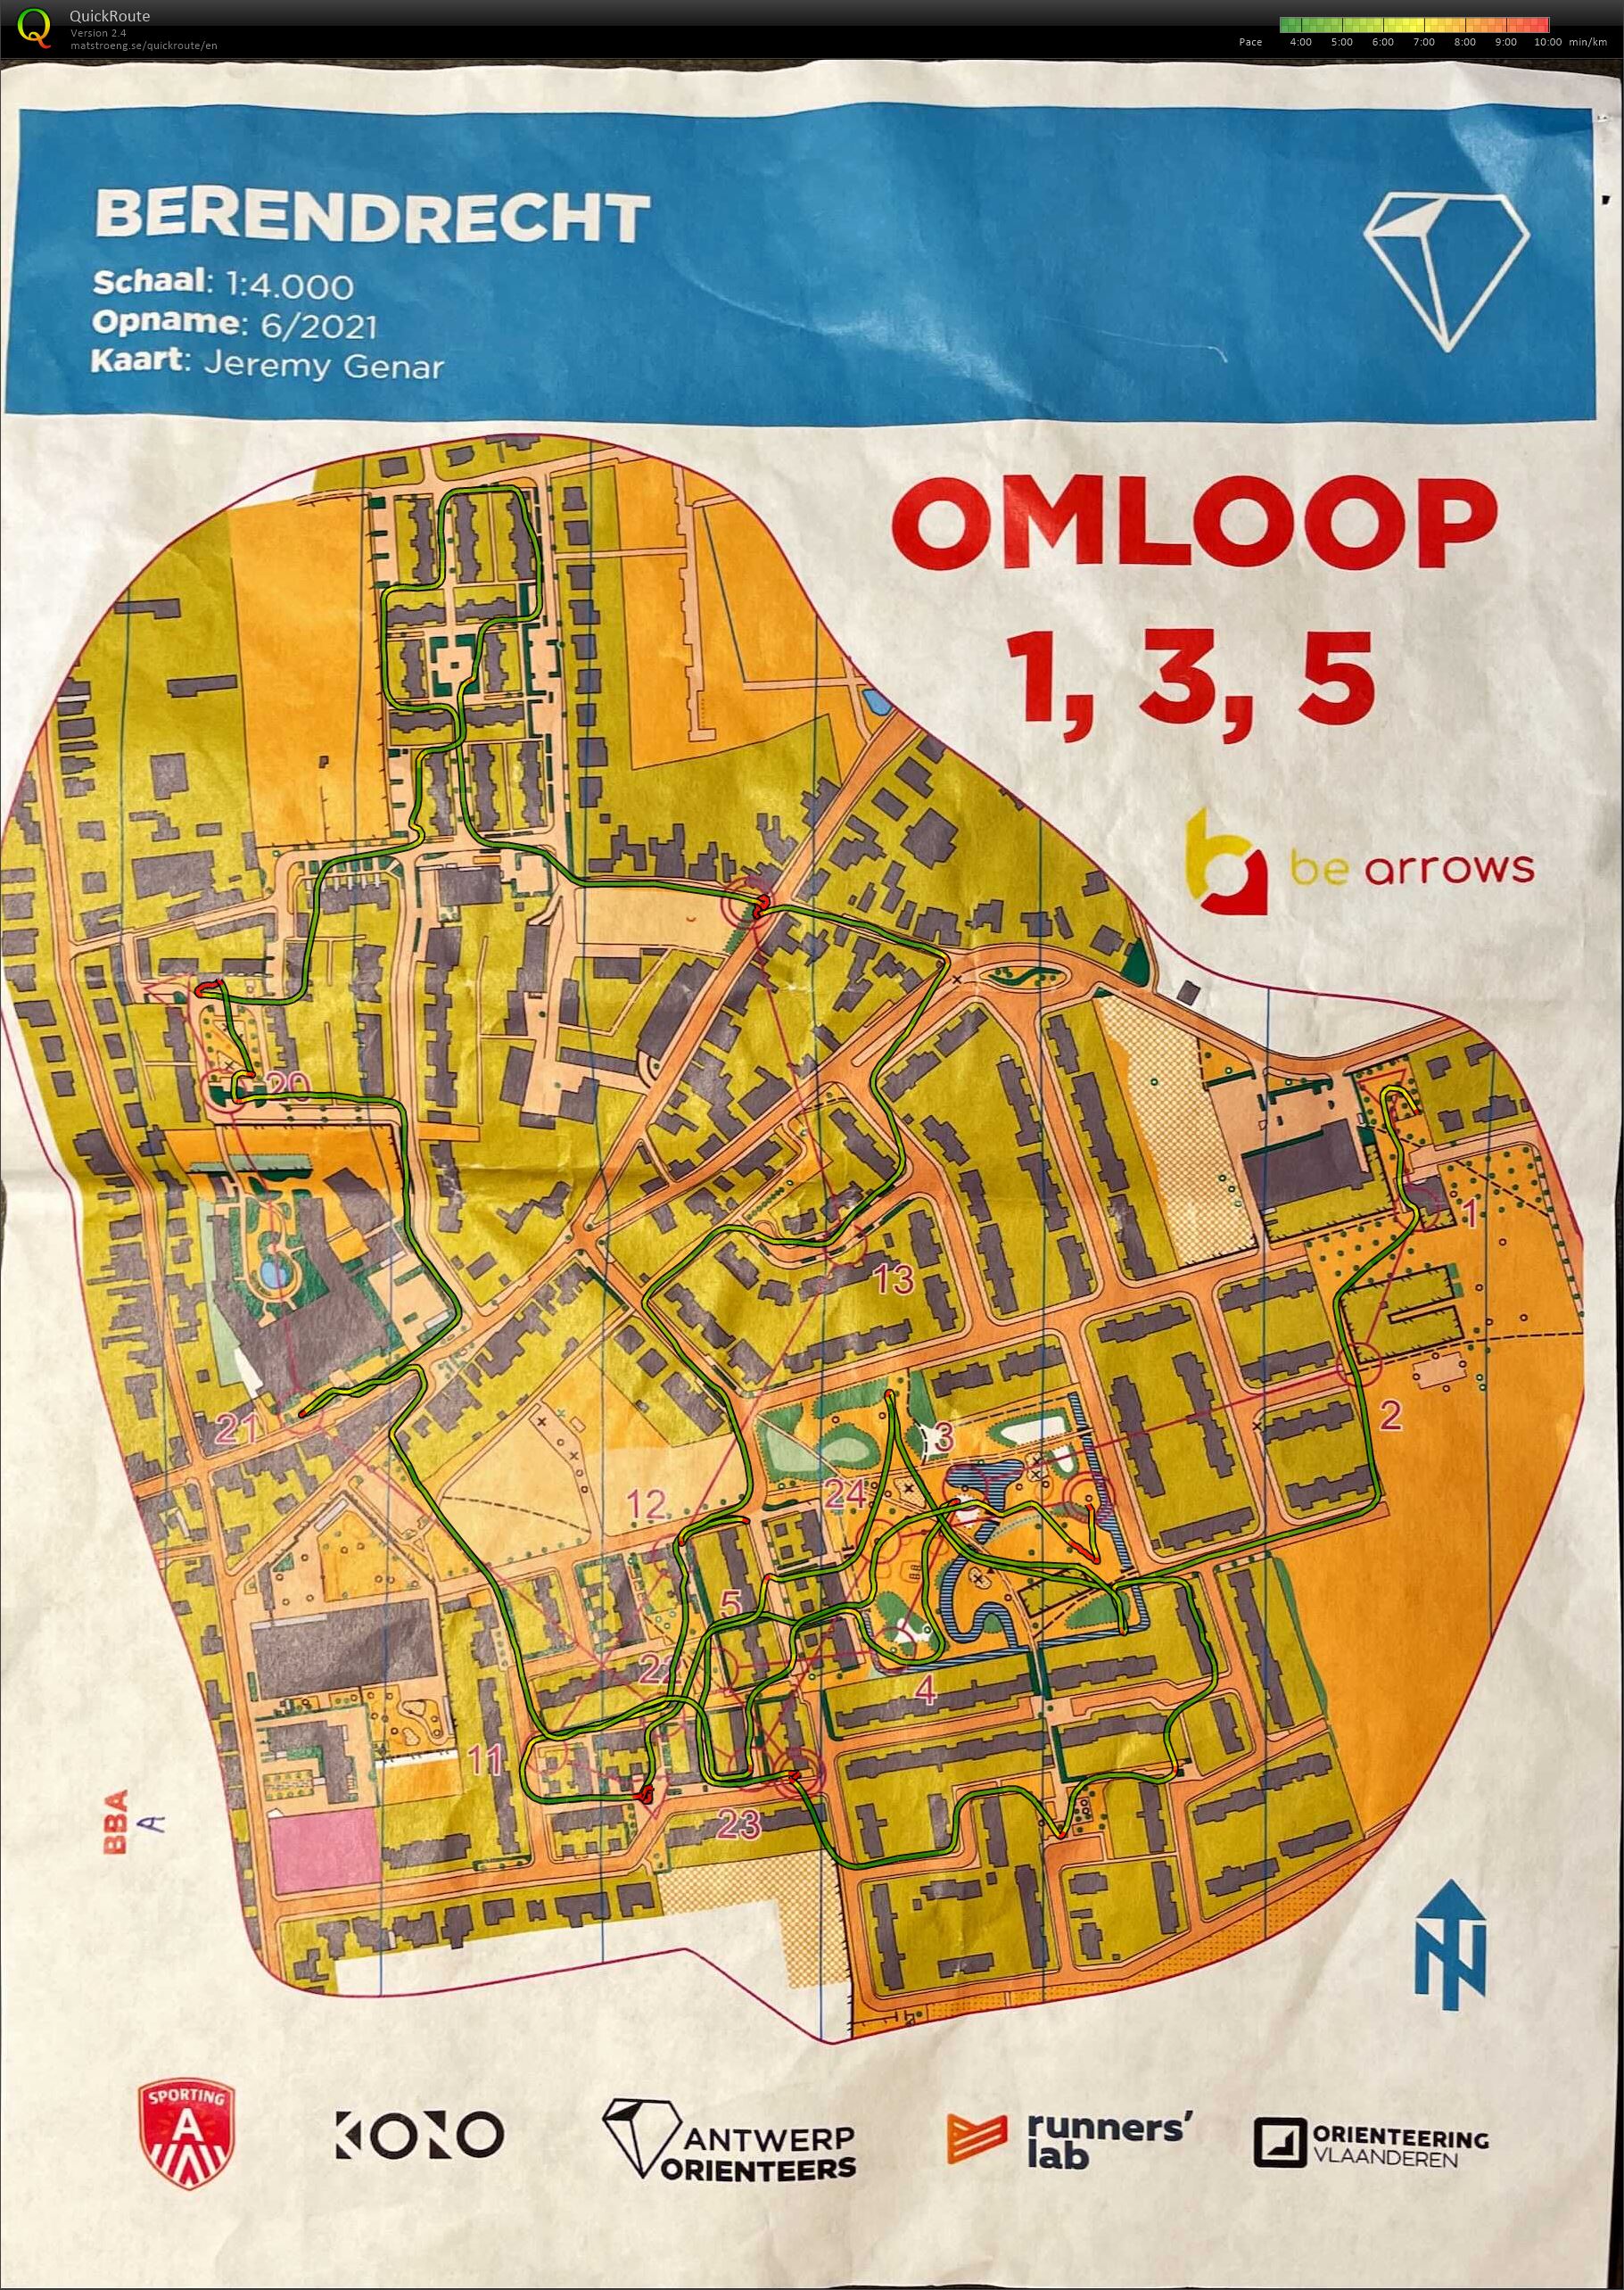 Berendrecht - Omloop 1,3,5 (11.06.2021)